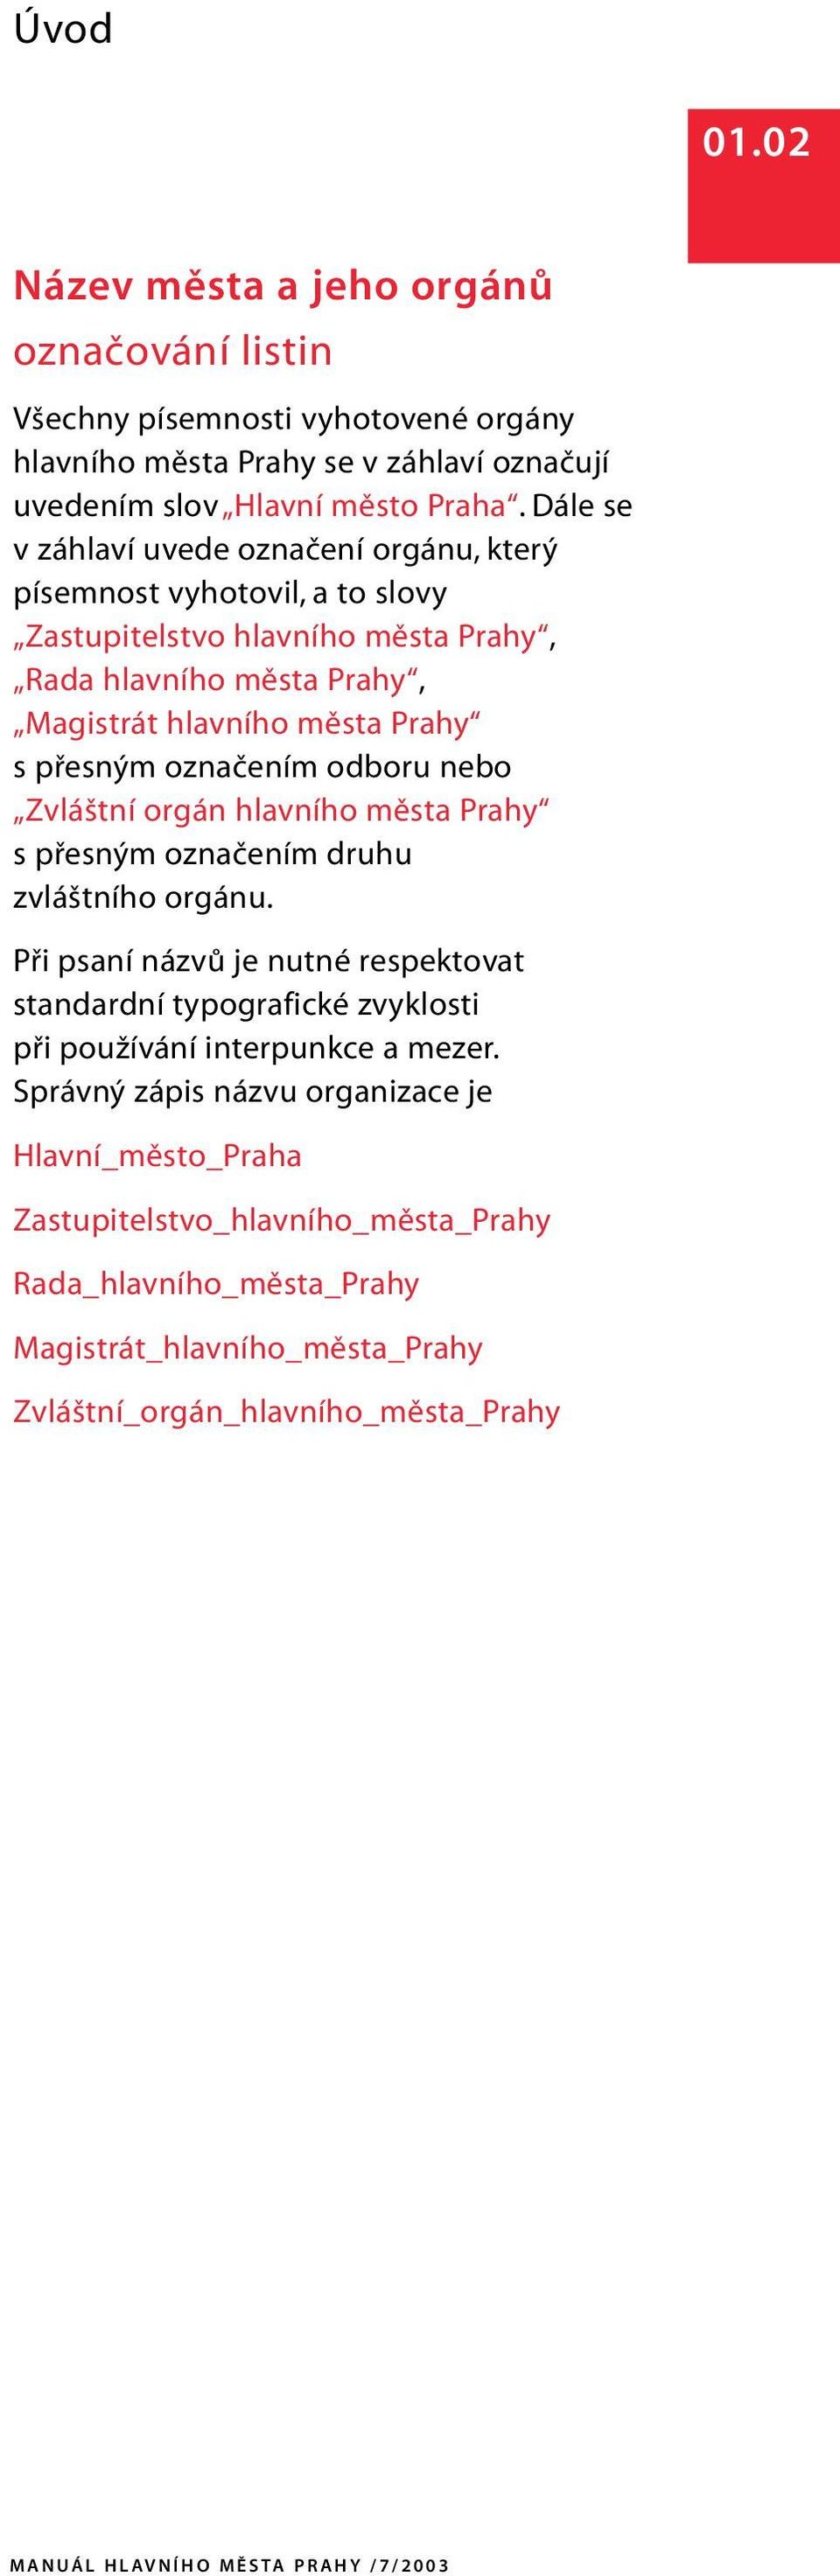 odboru nebo Zvláštní orgán hlavního města Prahy s přesným označením druhu zvláštního orgánu.